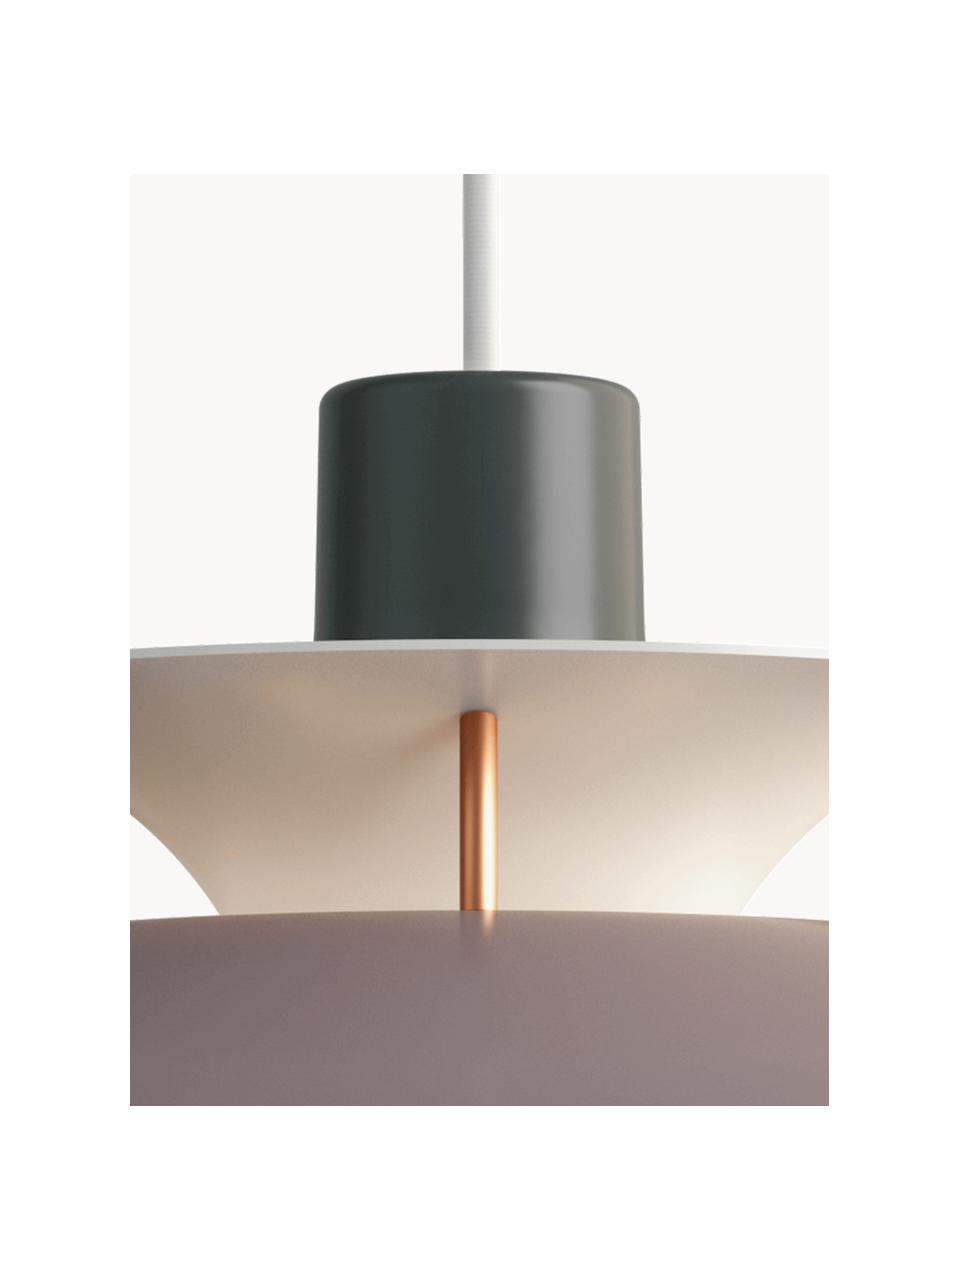 Lampa wisząca PH 5, różne rozmiary, Odcienie szarego, odcienie złotego, Ø 50 x 27 cm